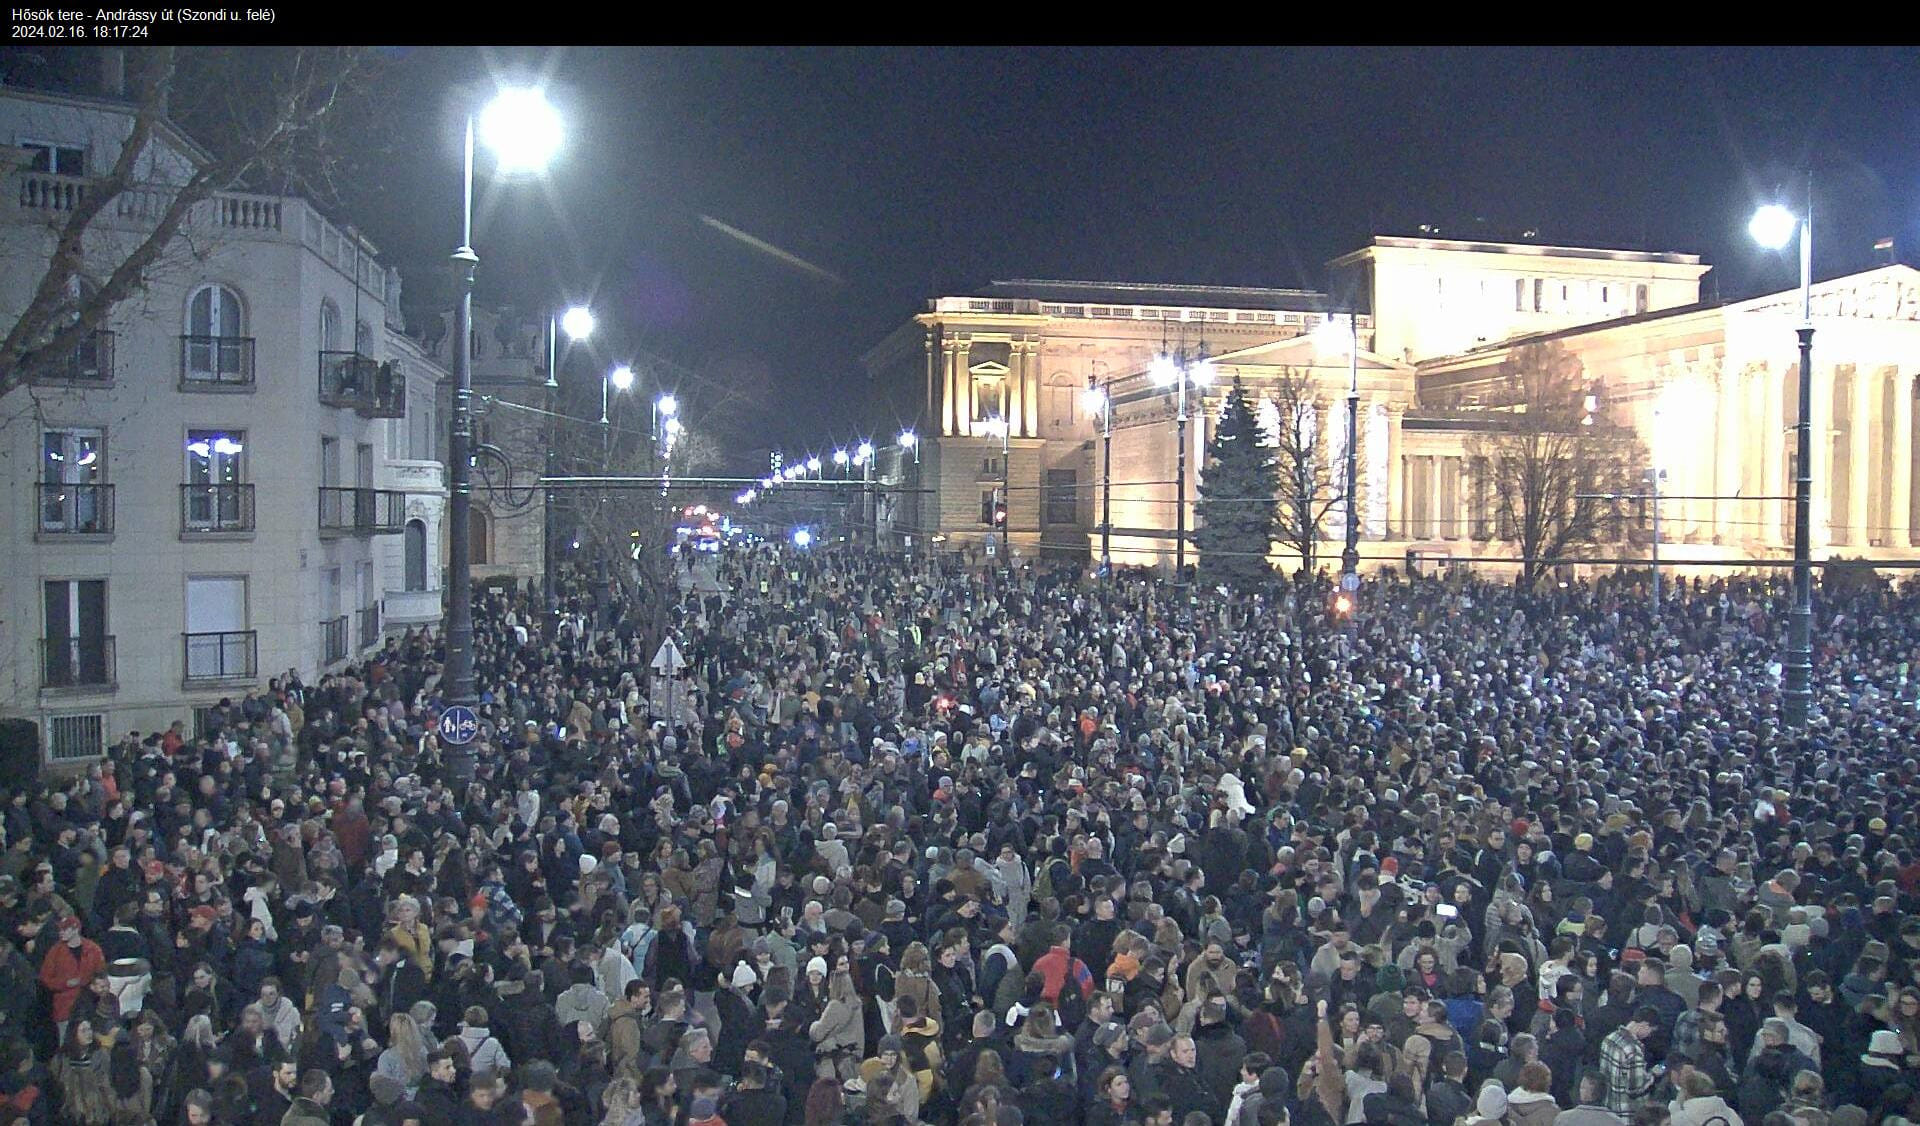 Hihetetlen: Már 60 millió forint érkezett a pénteki tüntetésen indított gyűjtésre